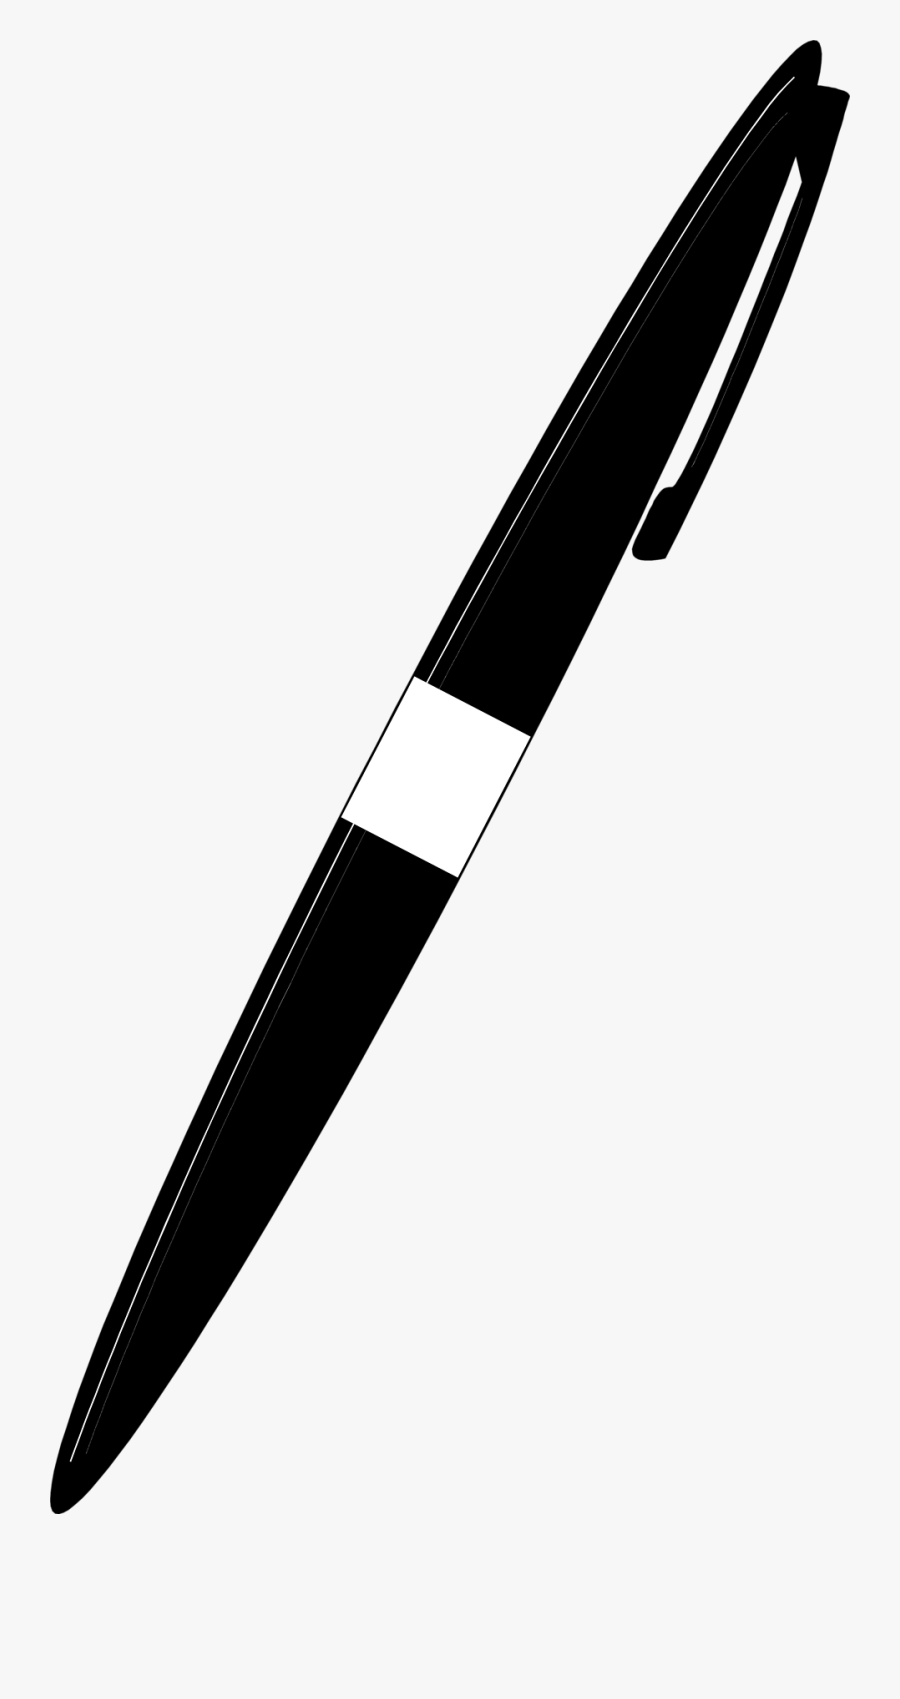 Pen Clipart No Background - Knife Silhouette Clip Art, Transparent Clipart